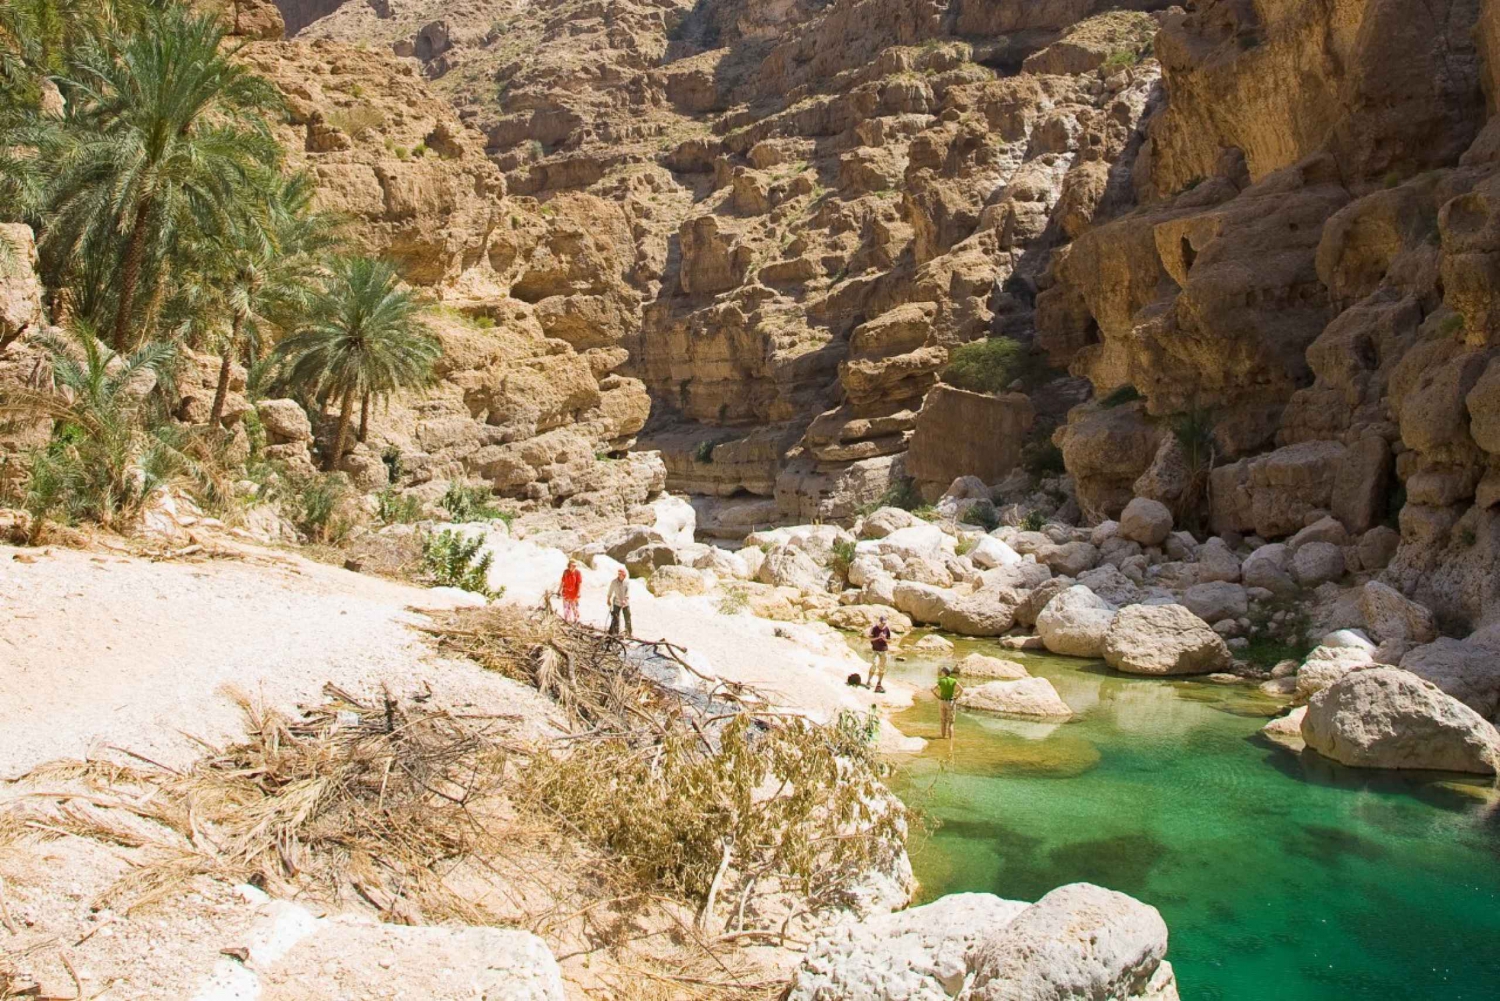 Dagtocht: Wadi Shab&Sinkhole Tour-Onderzoek het wonder van de natuur